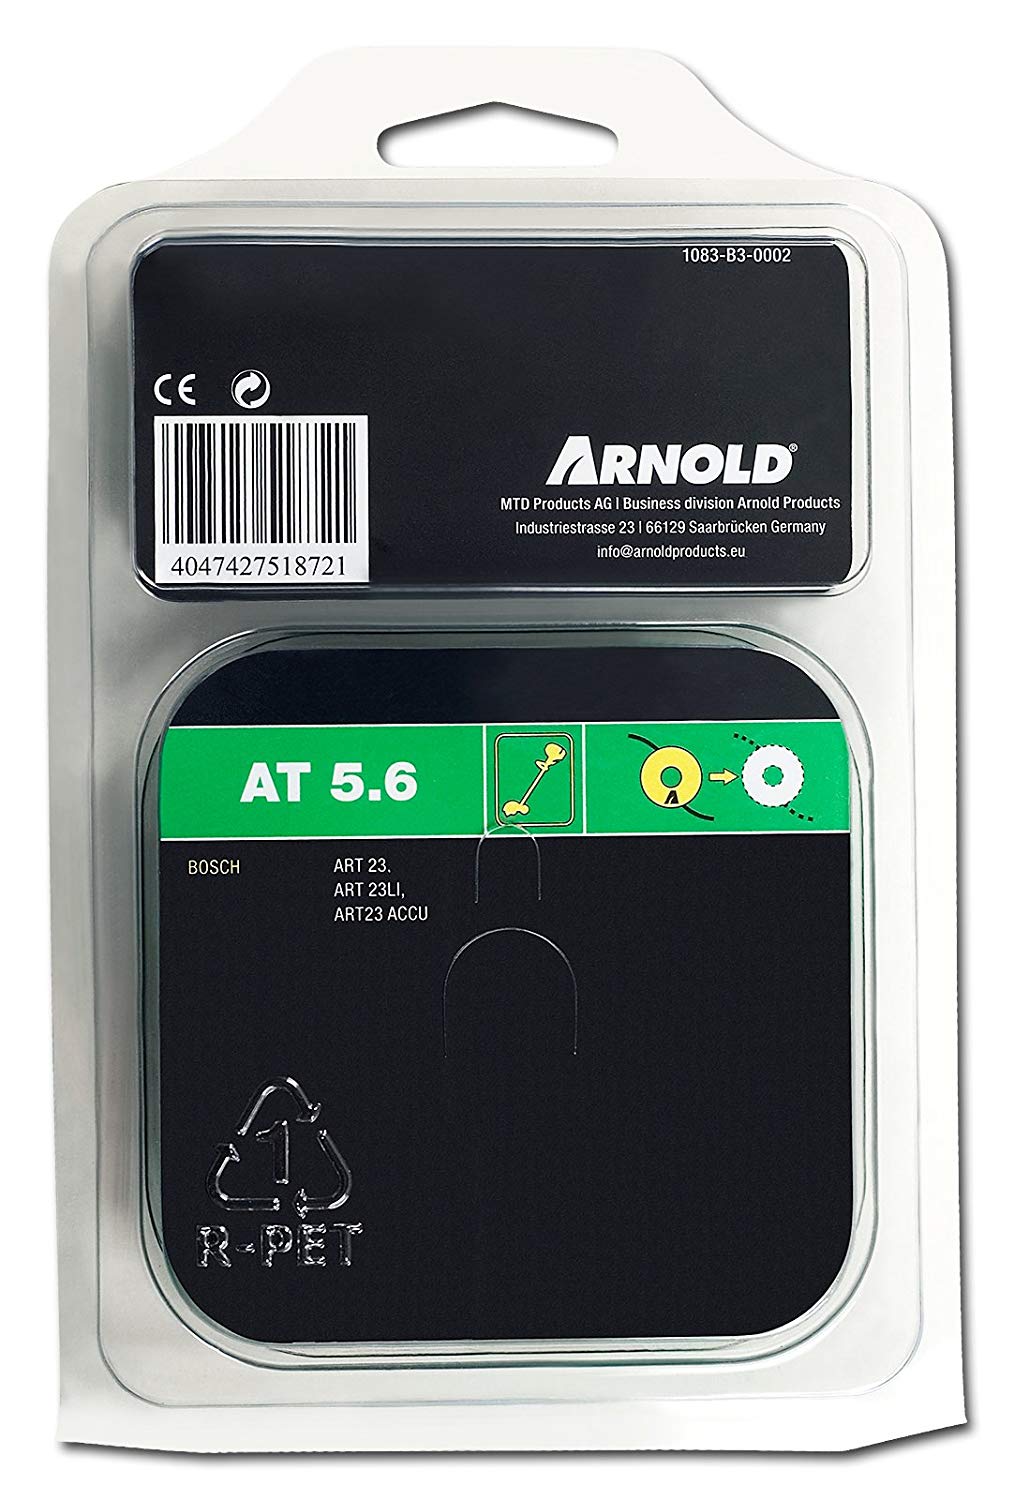 1 StÃ¼ck Arnold 1083-B3-0009 AT27 Ersatzmesser 5 fÃ¼r Bosch Art 23-18 Li